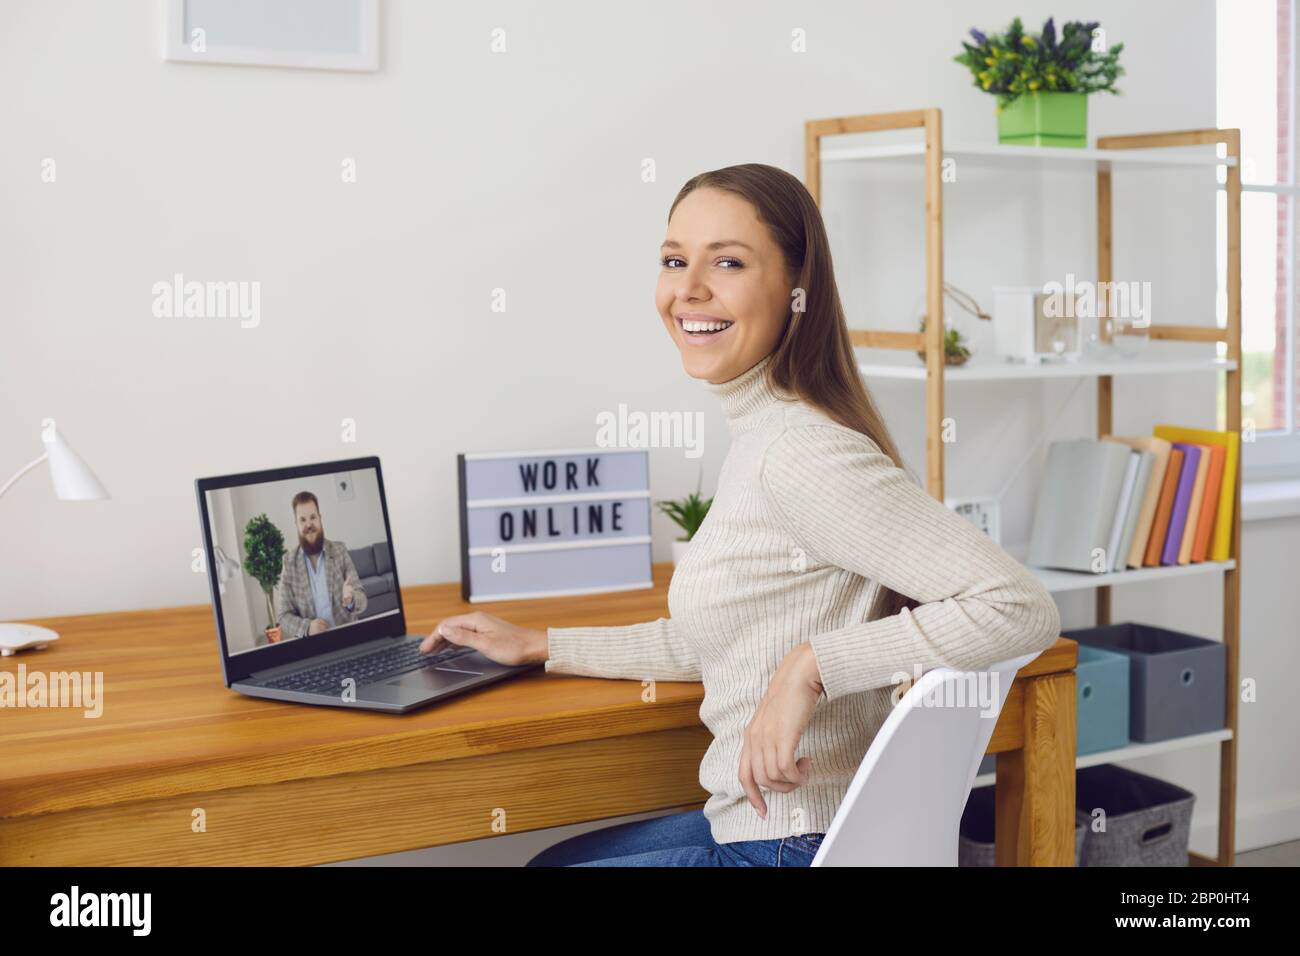 Online-Arbeit zu Hause. Eine Frau arbeitet an einem Tisch mit einem Laptop, sie spricht mit einem Partner über die Videoanruf-Chat-Anwendung zu Hause. Stockfoto